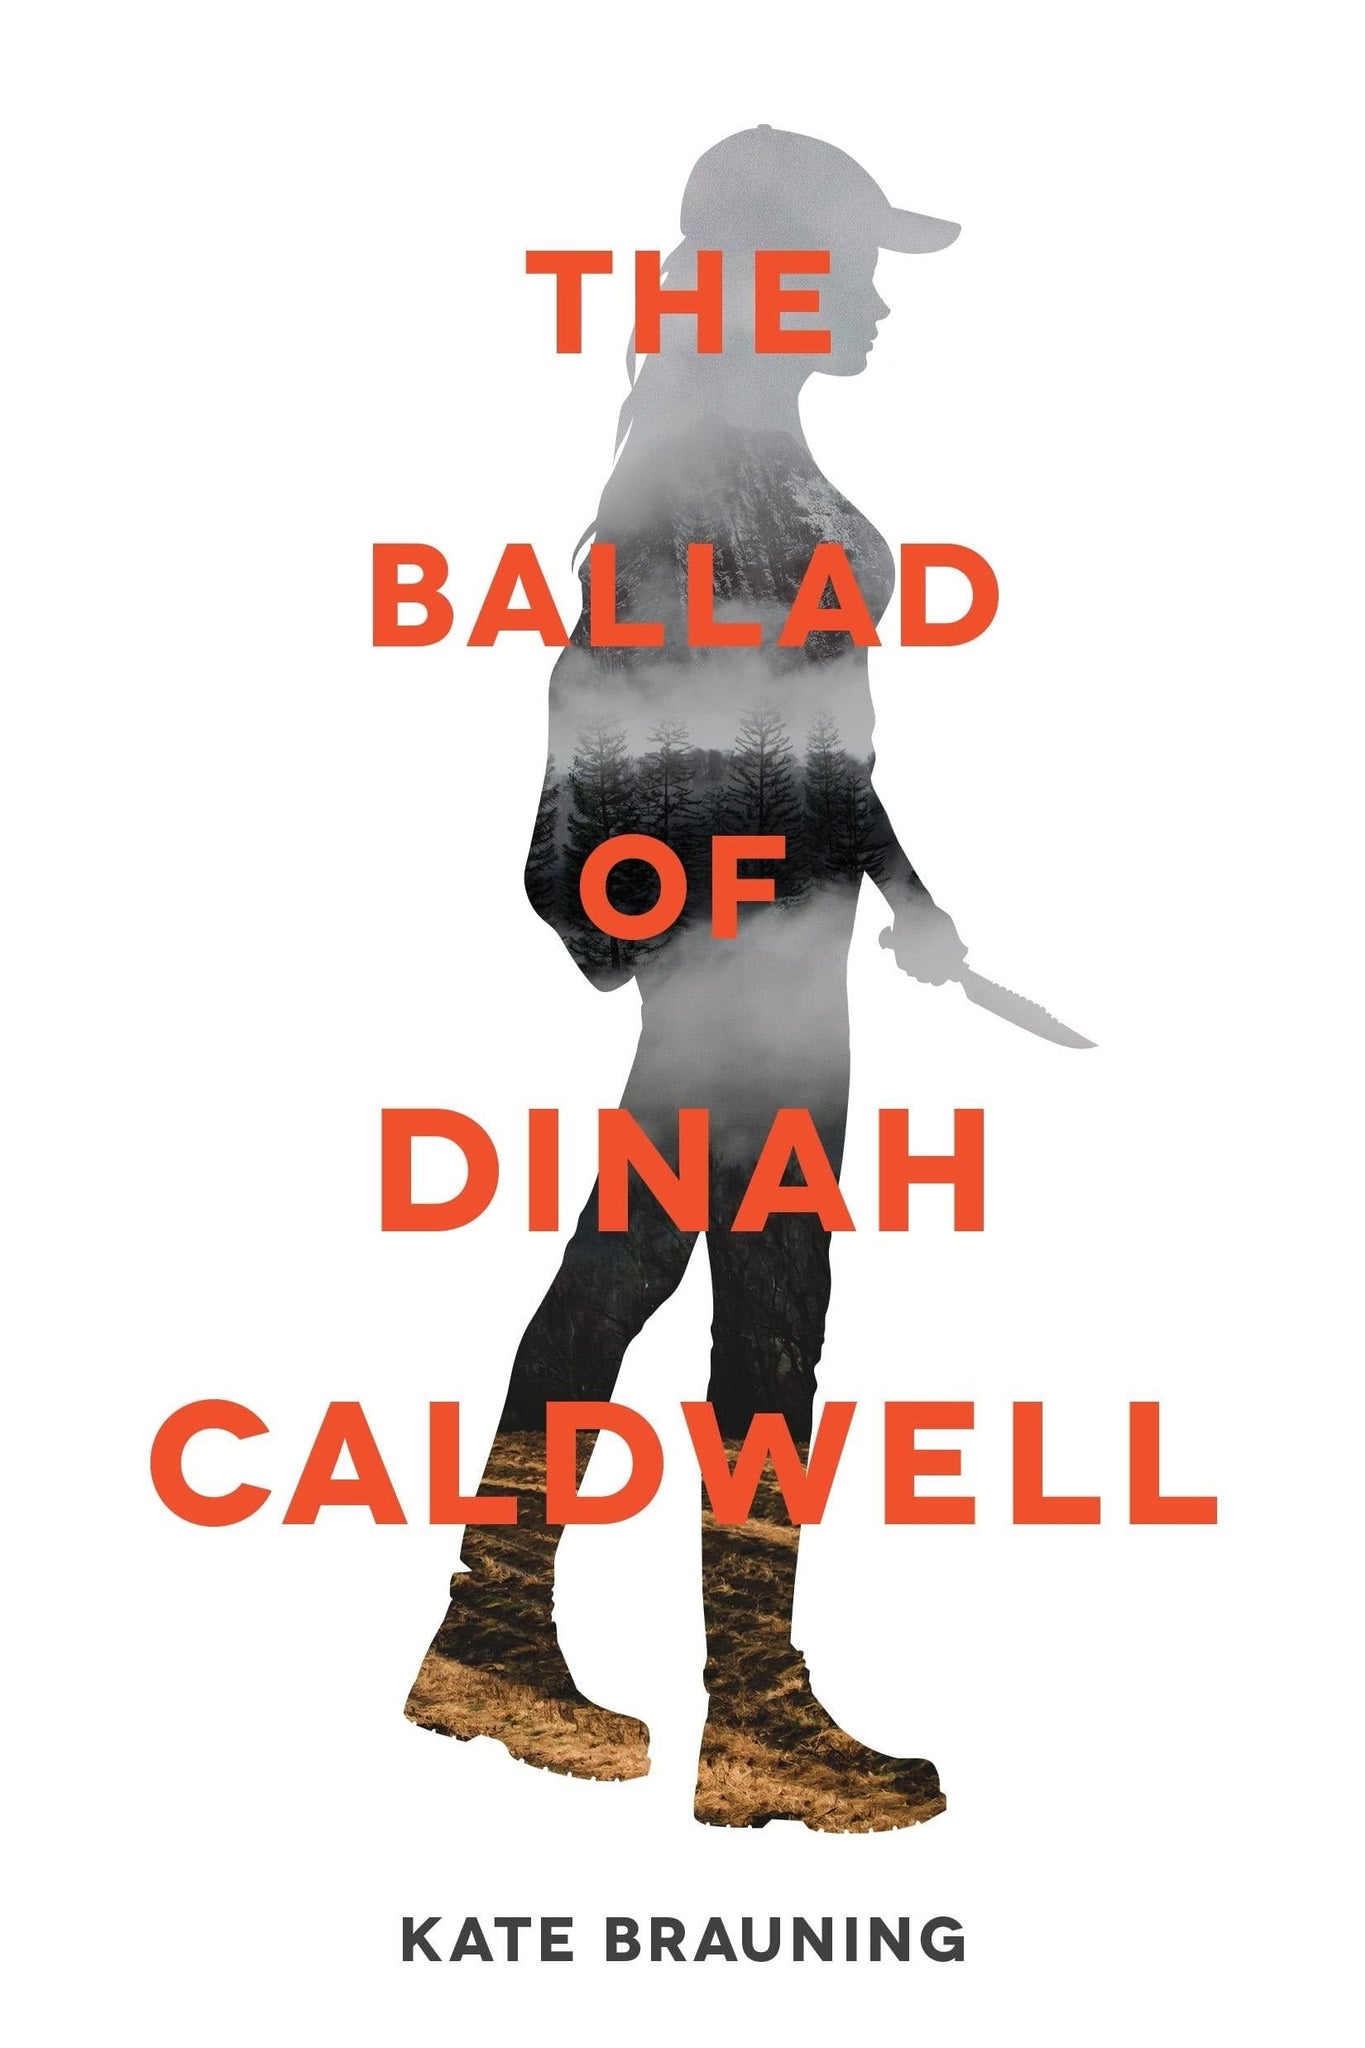 The Ballad of Dinah Caldwell - ShopQueer.co